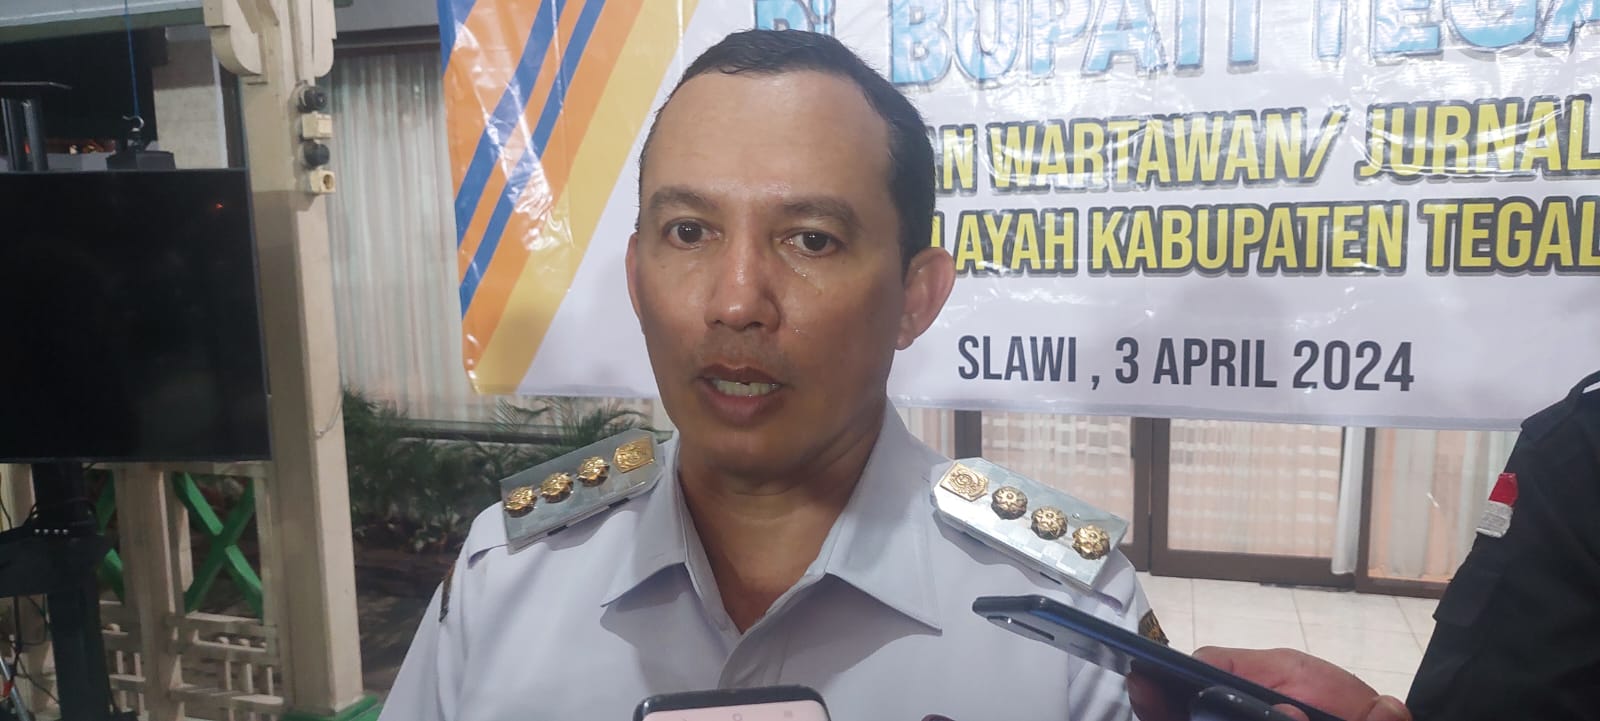 Pencurian MCB Lampu PJU di Kabupaten Tegal Marak, Pj Bupati Bingung: Padahal Baru Dipasang 